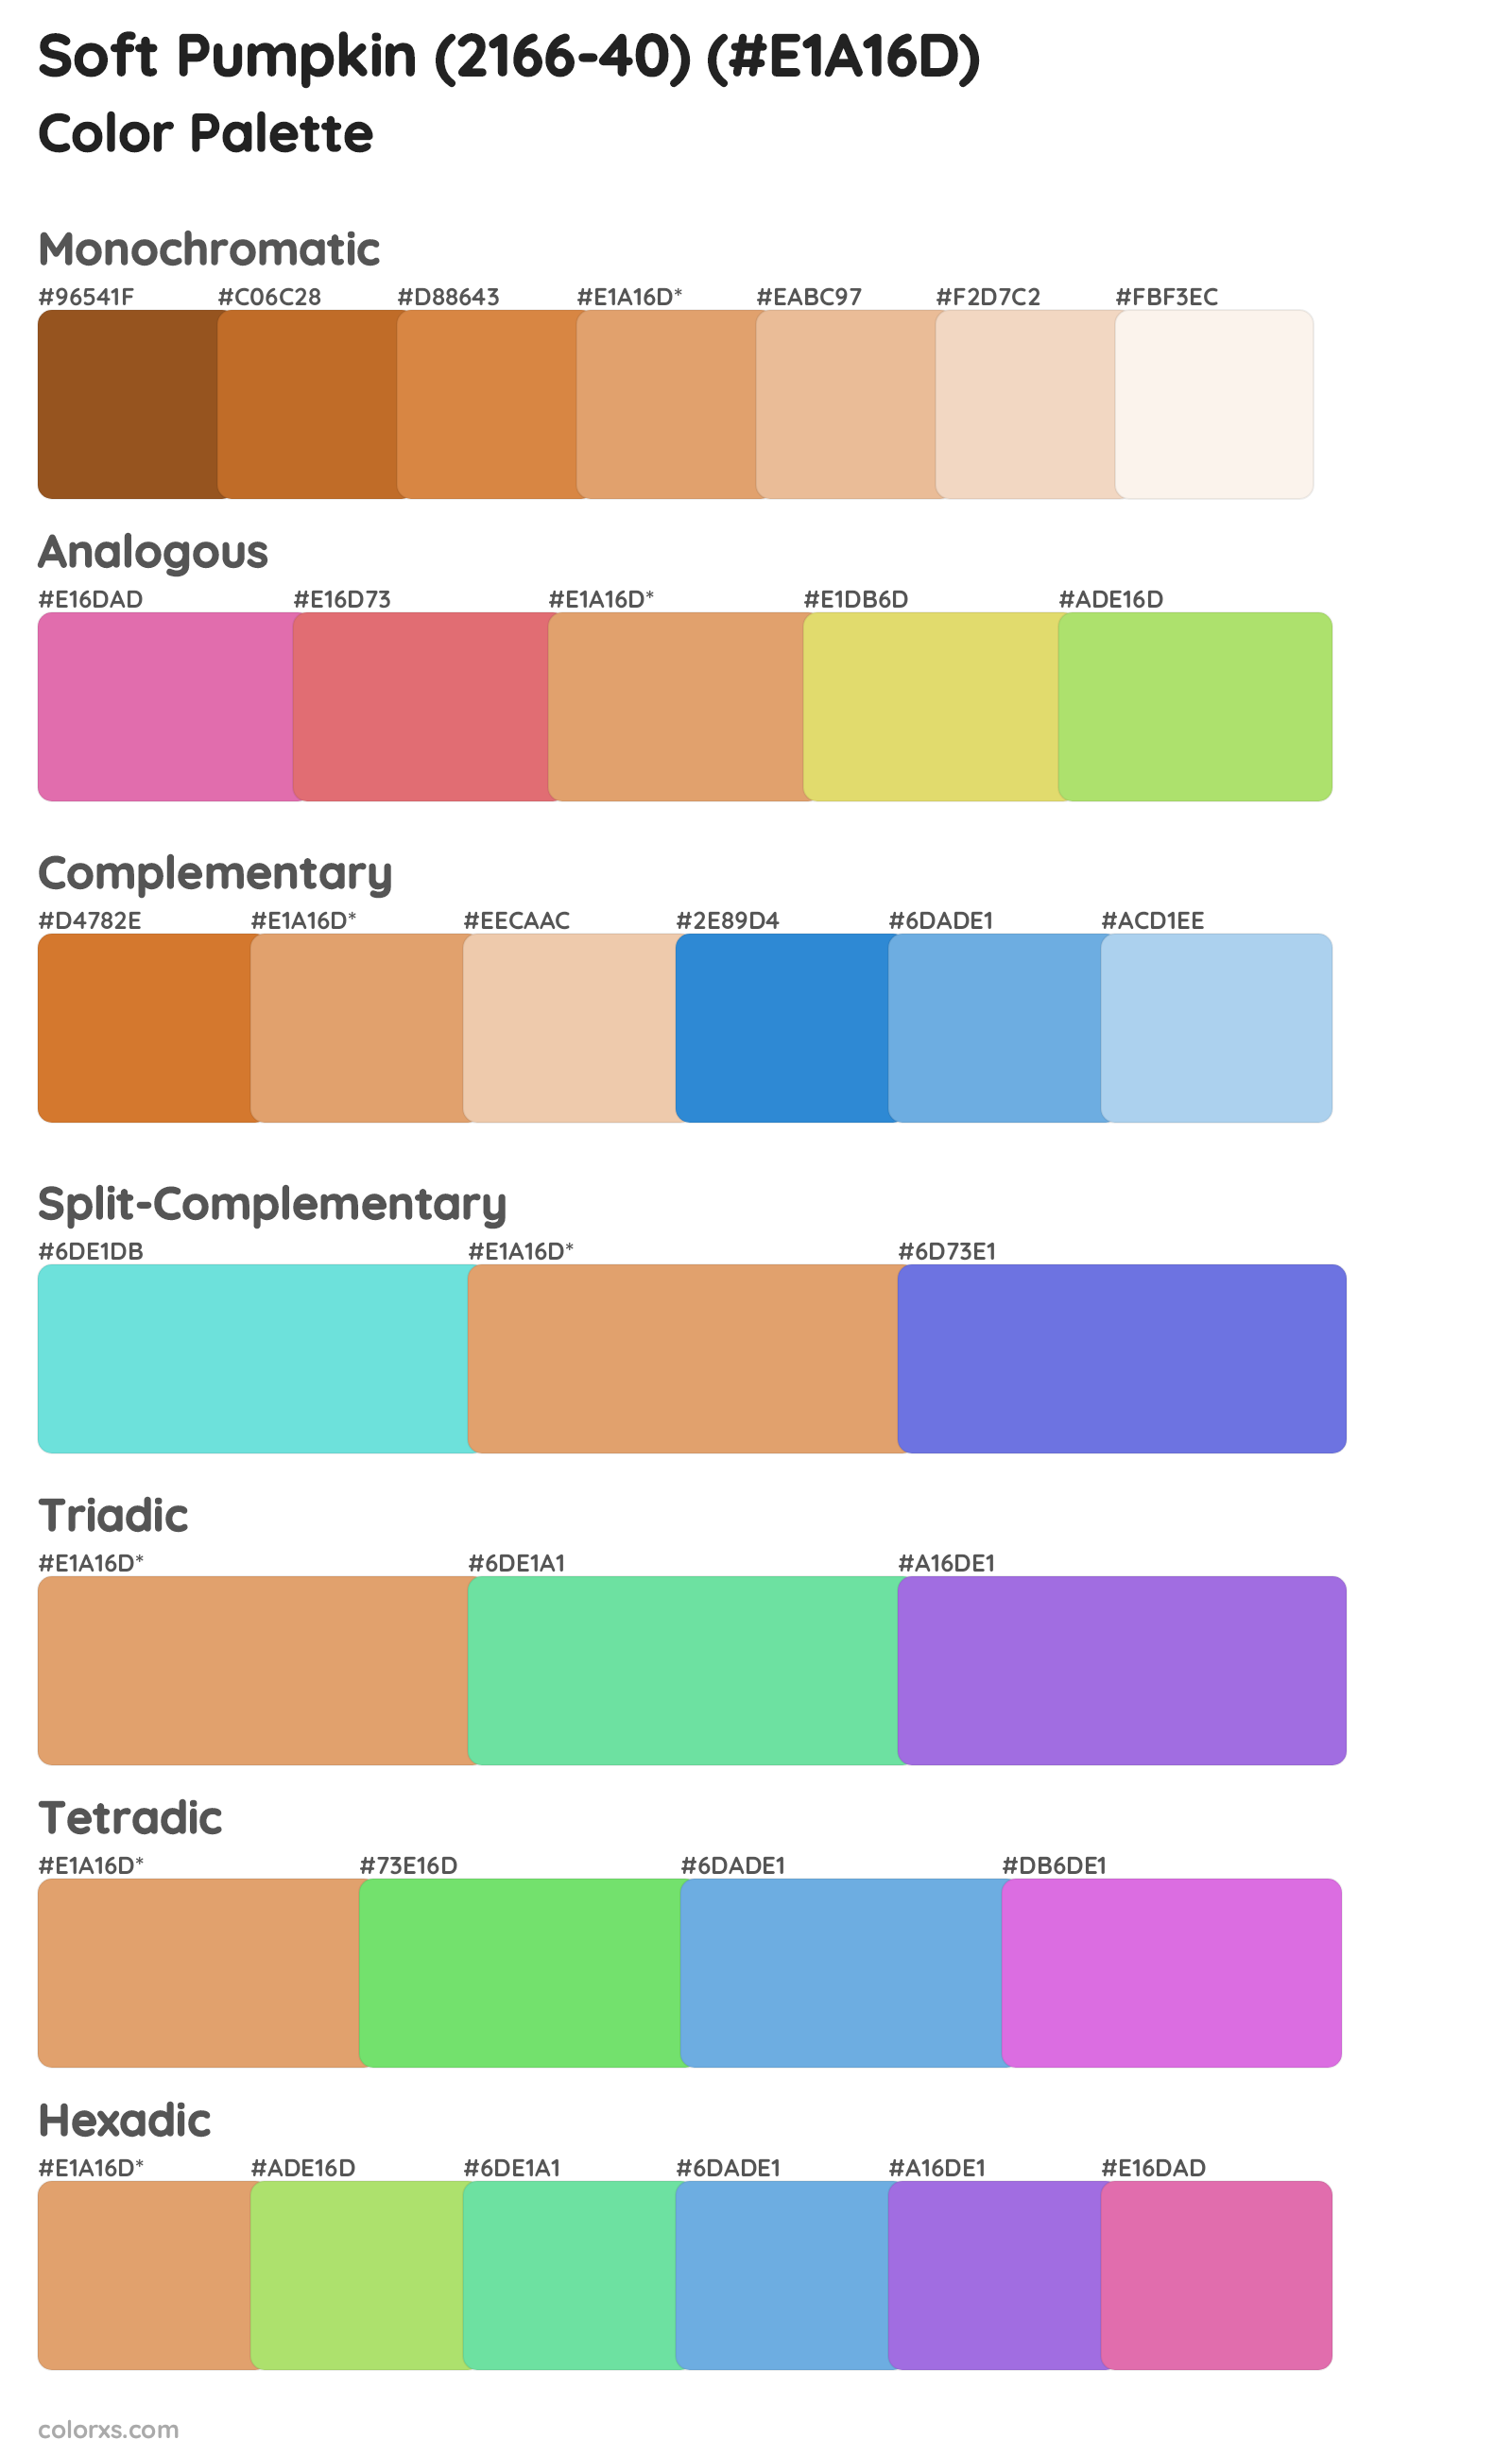 Soft Pumpkin (2166-40) Color Scheme Palettes